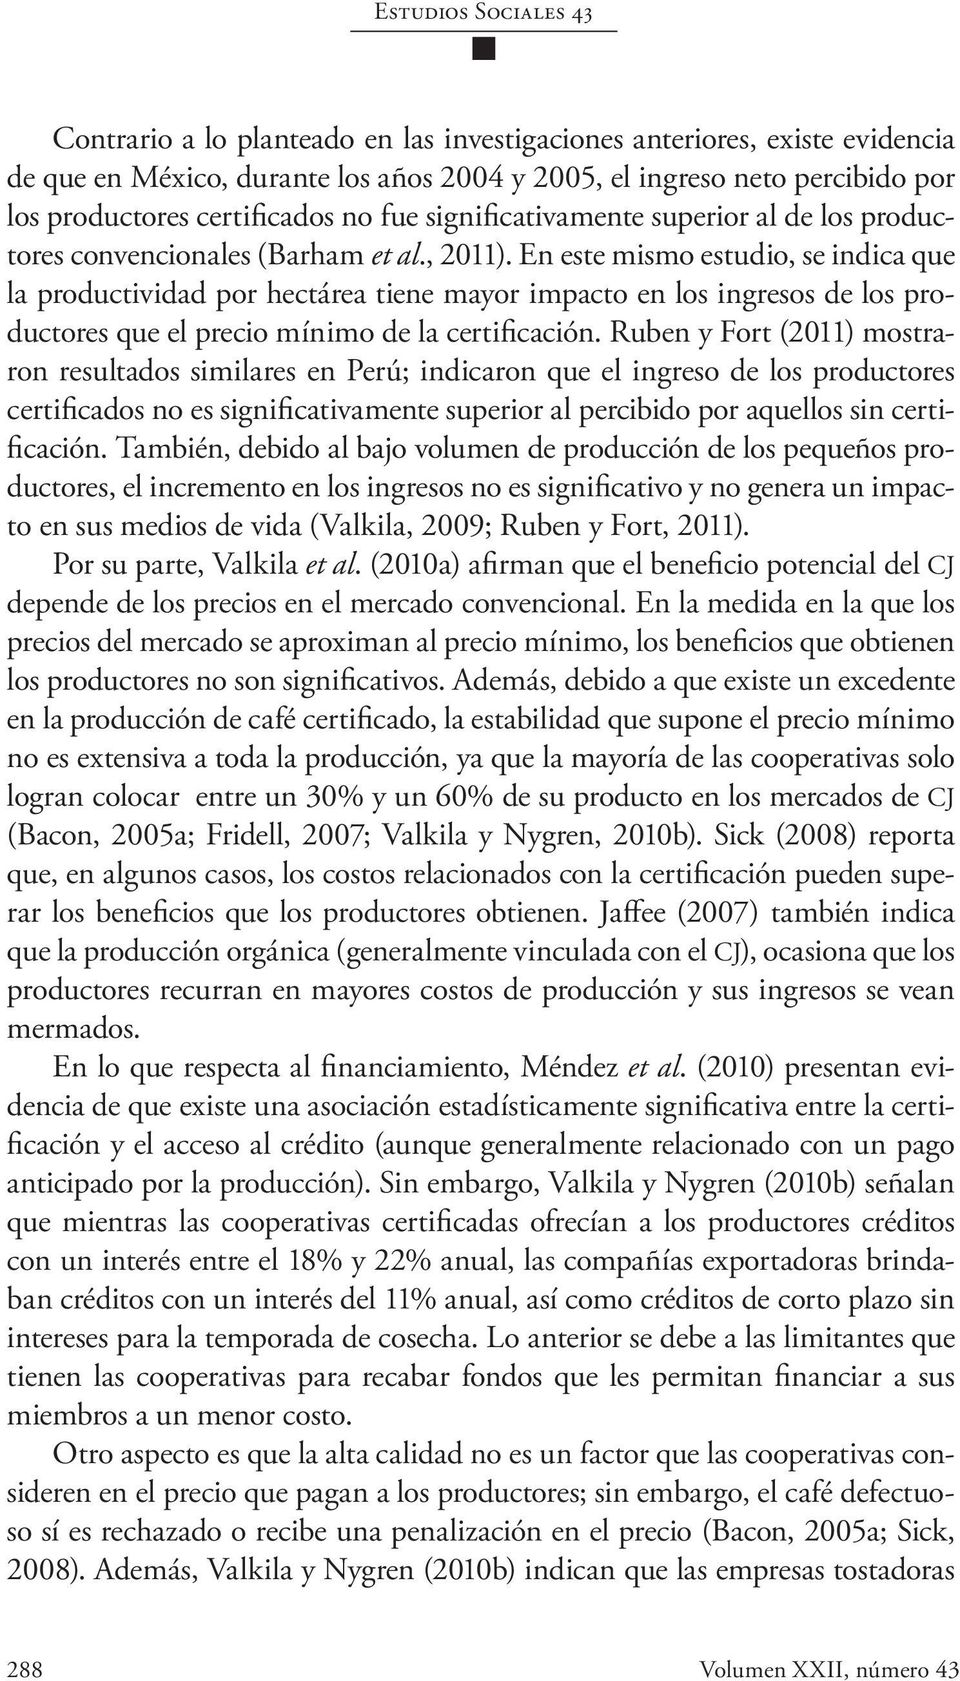 En este mismo estudio, se indica que la productividad por hectárea tiene mayor impacto en los ingresos de los productores que el precio mínimo de la certificación.